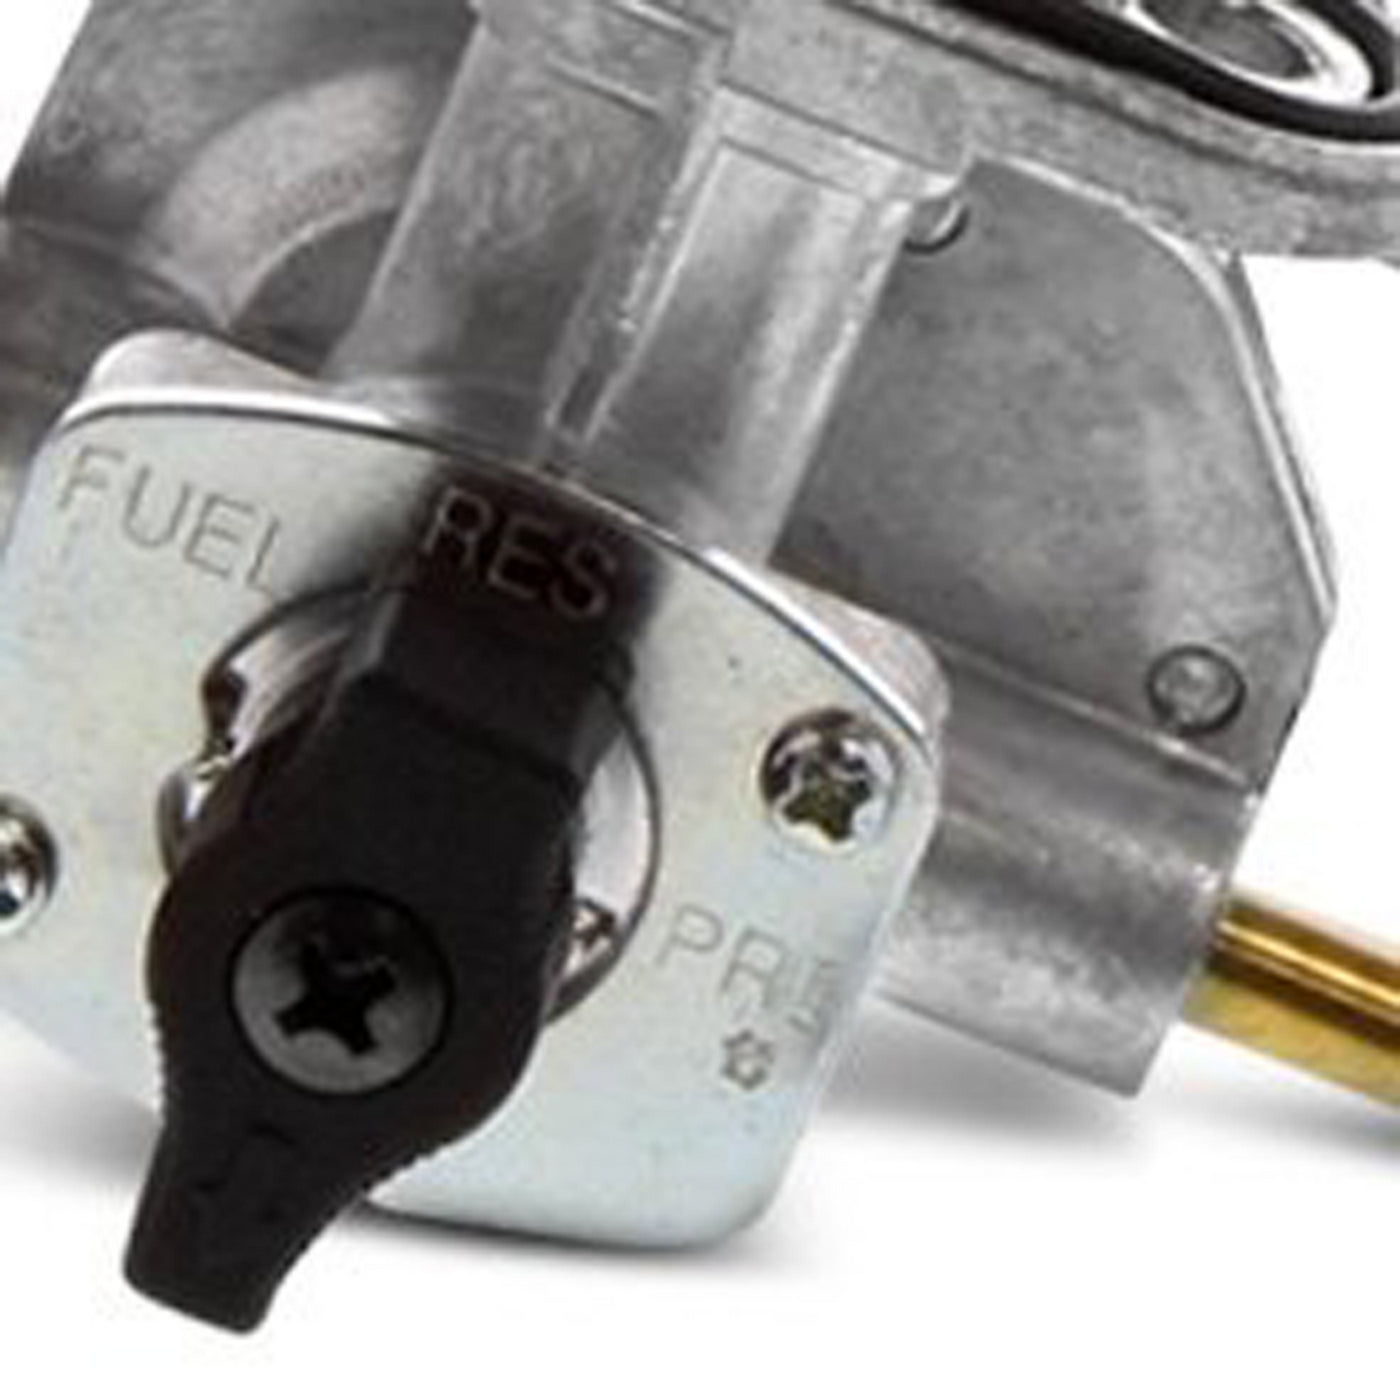 Fuel Star FS101-0164 Fuel Valve Kit #FS101-0164